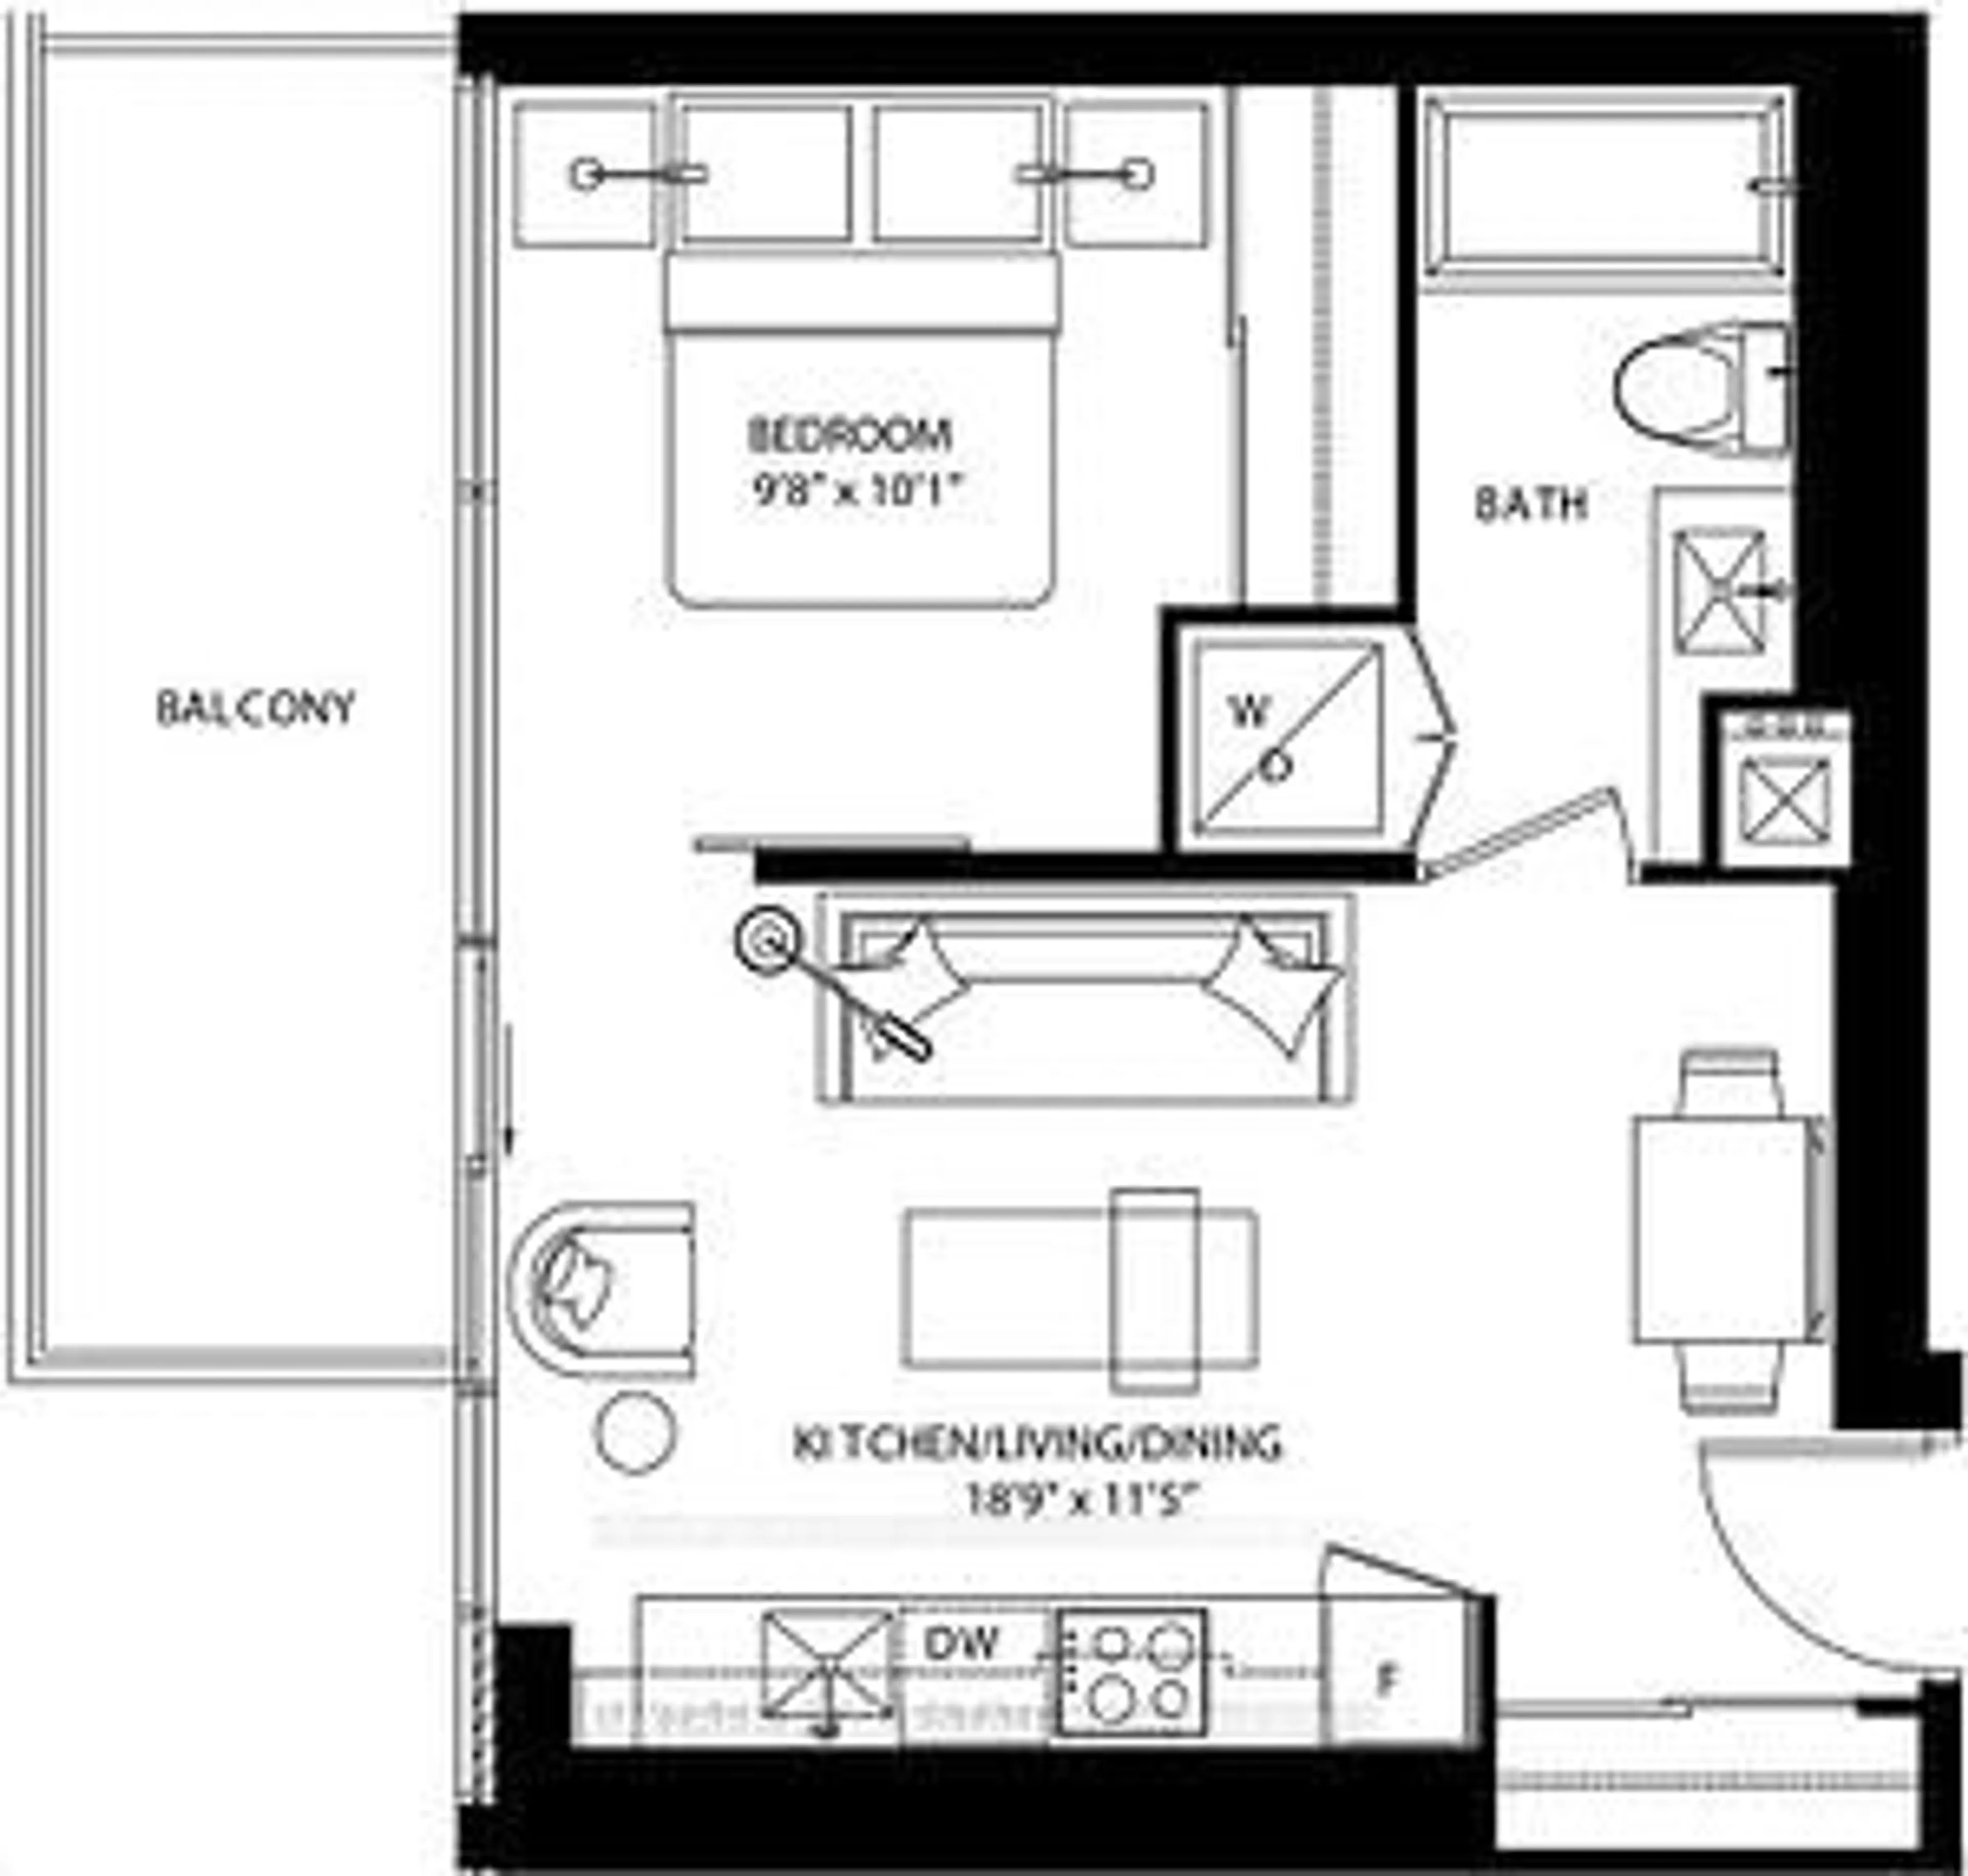 Floor plan for 290 Adelaide St #2412, Toronto Ontario M5V 1P6